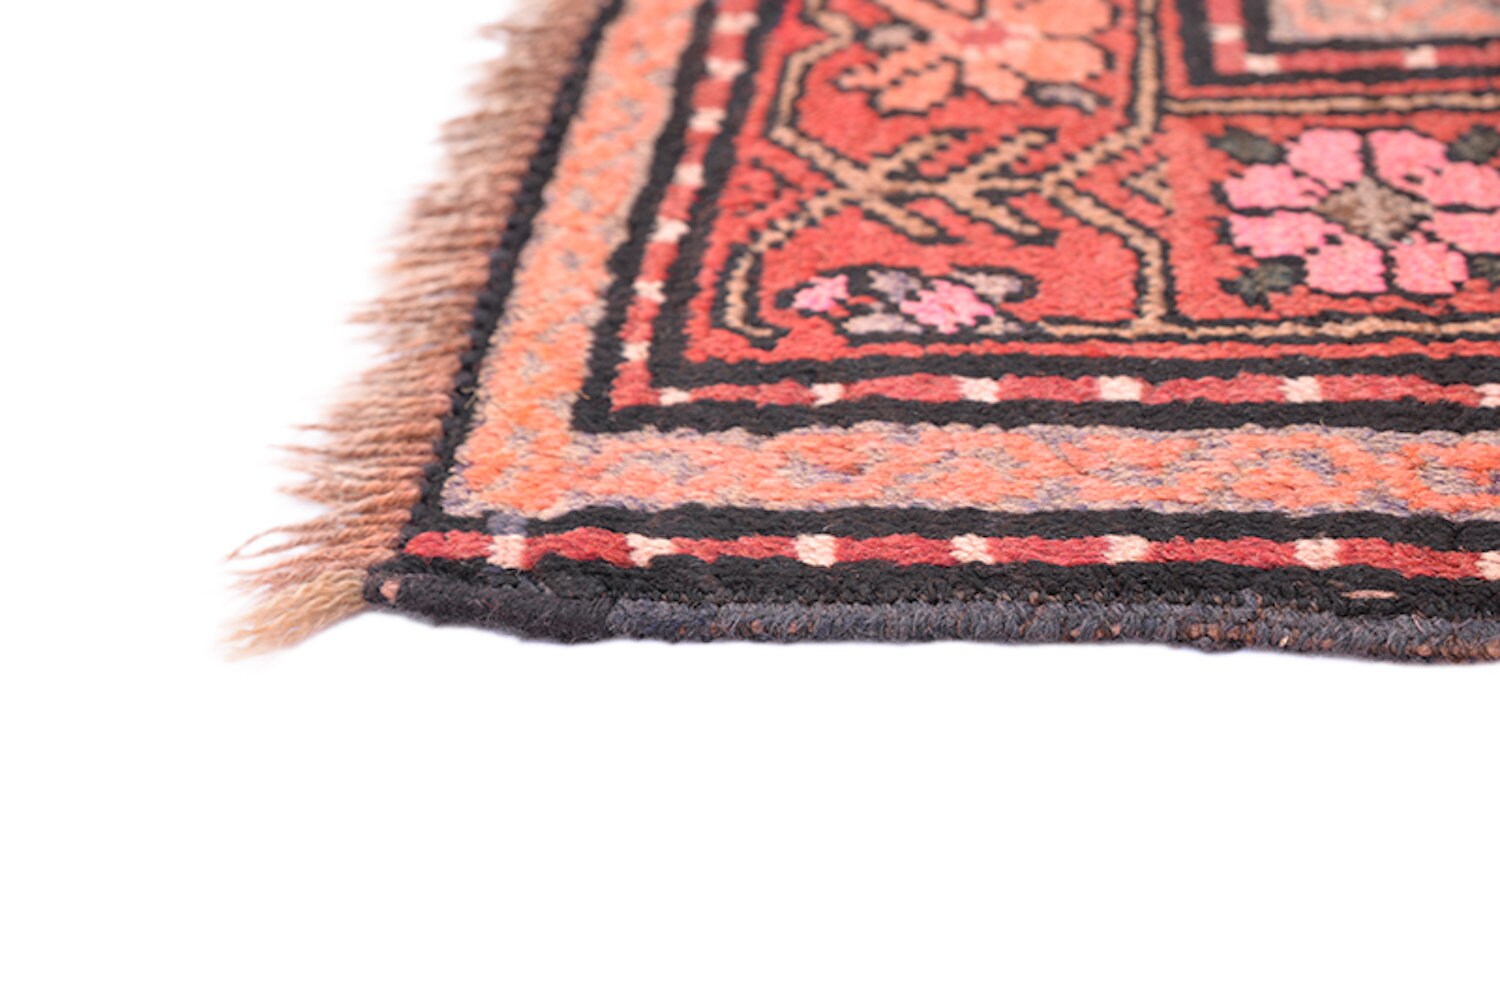 6 x 3 Feet Rug | Antique Tribal Rug | Handmade Red Navy Rug | Striped Rug | Wool Oriental Rug | Afghan Rug | Bordered Rug